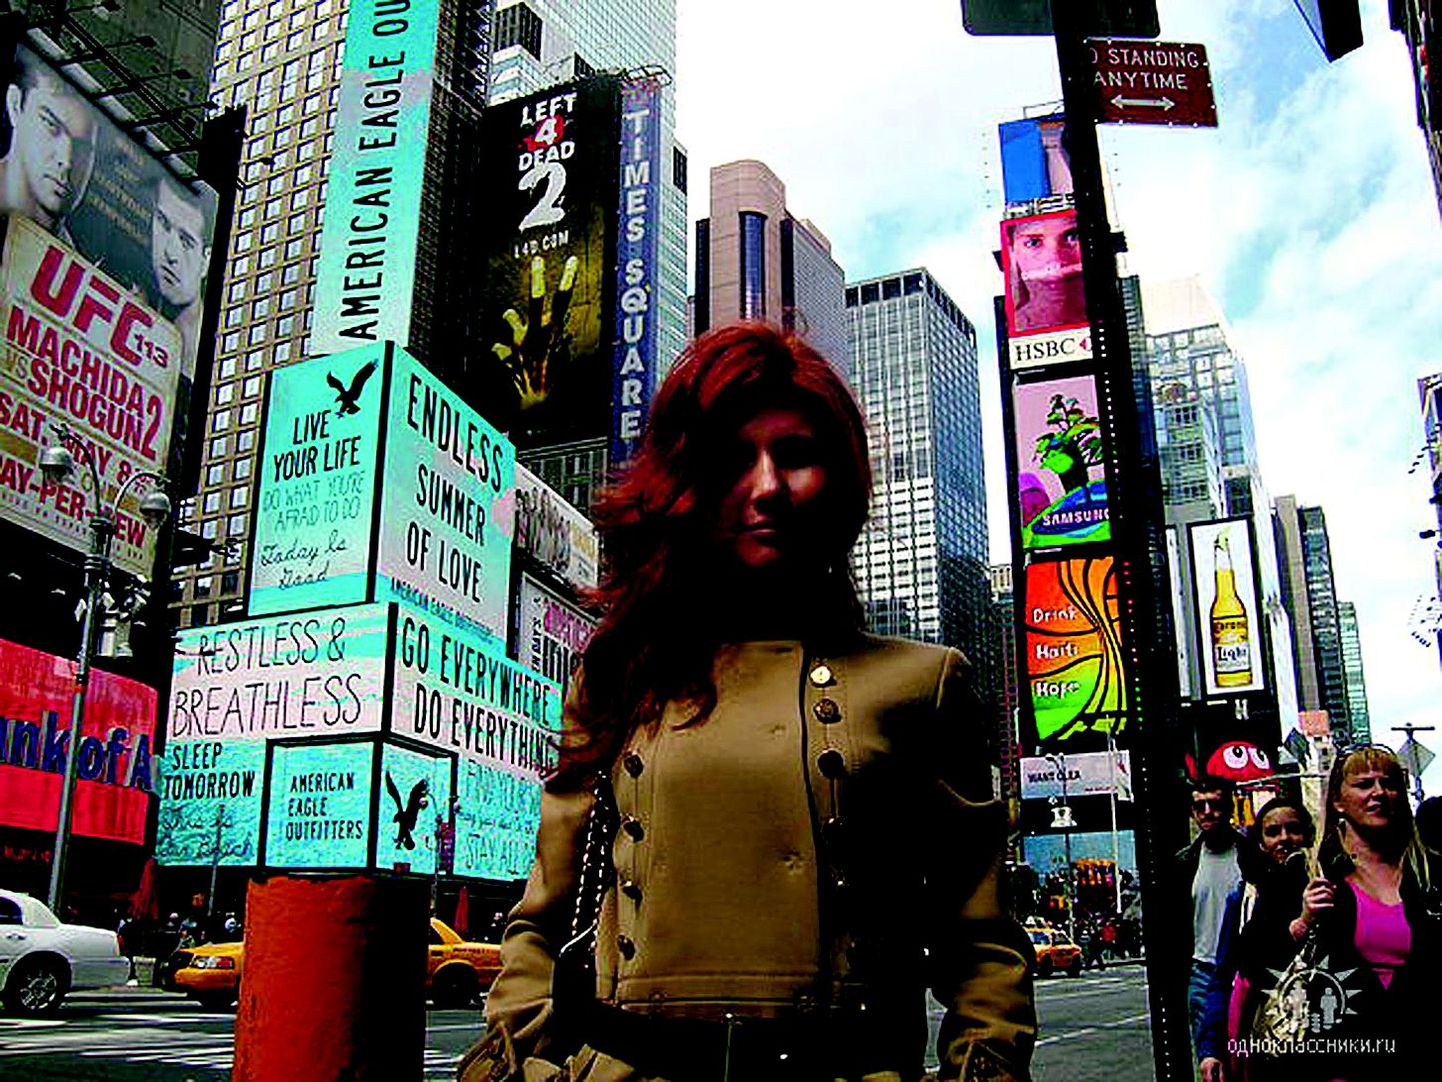 Venemaa staarspioon Anna Chapman kaasmaalaste sotsiaalmeediasaidile Odnoklasniki postitatud fotol New Yorgis.